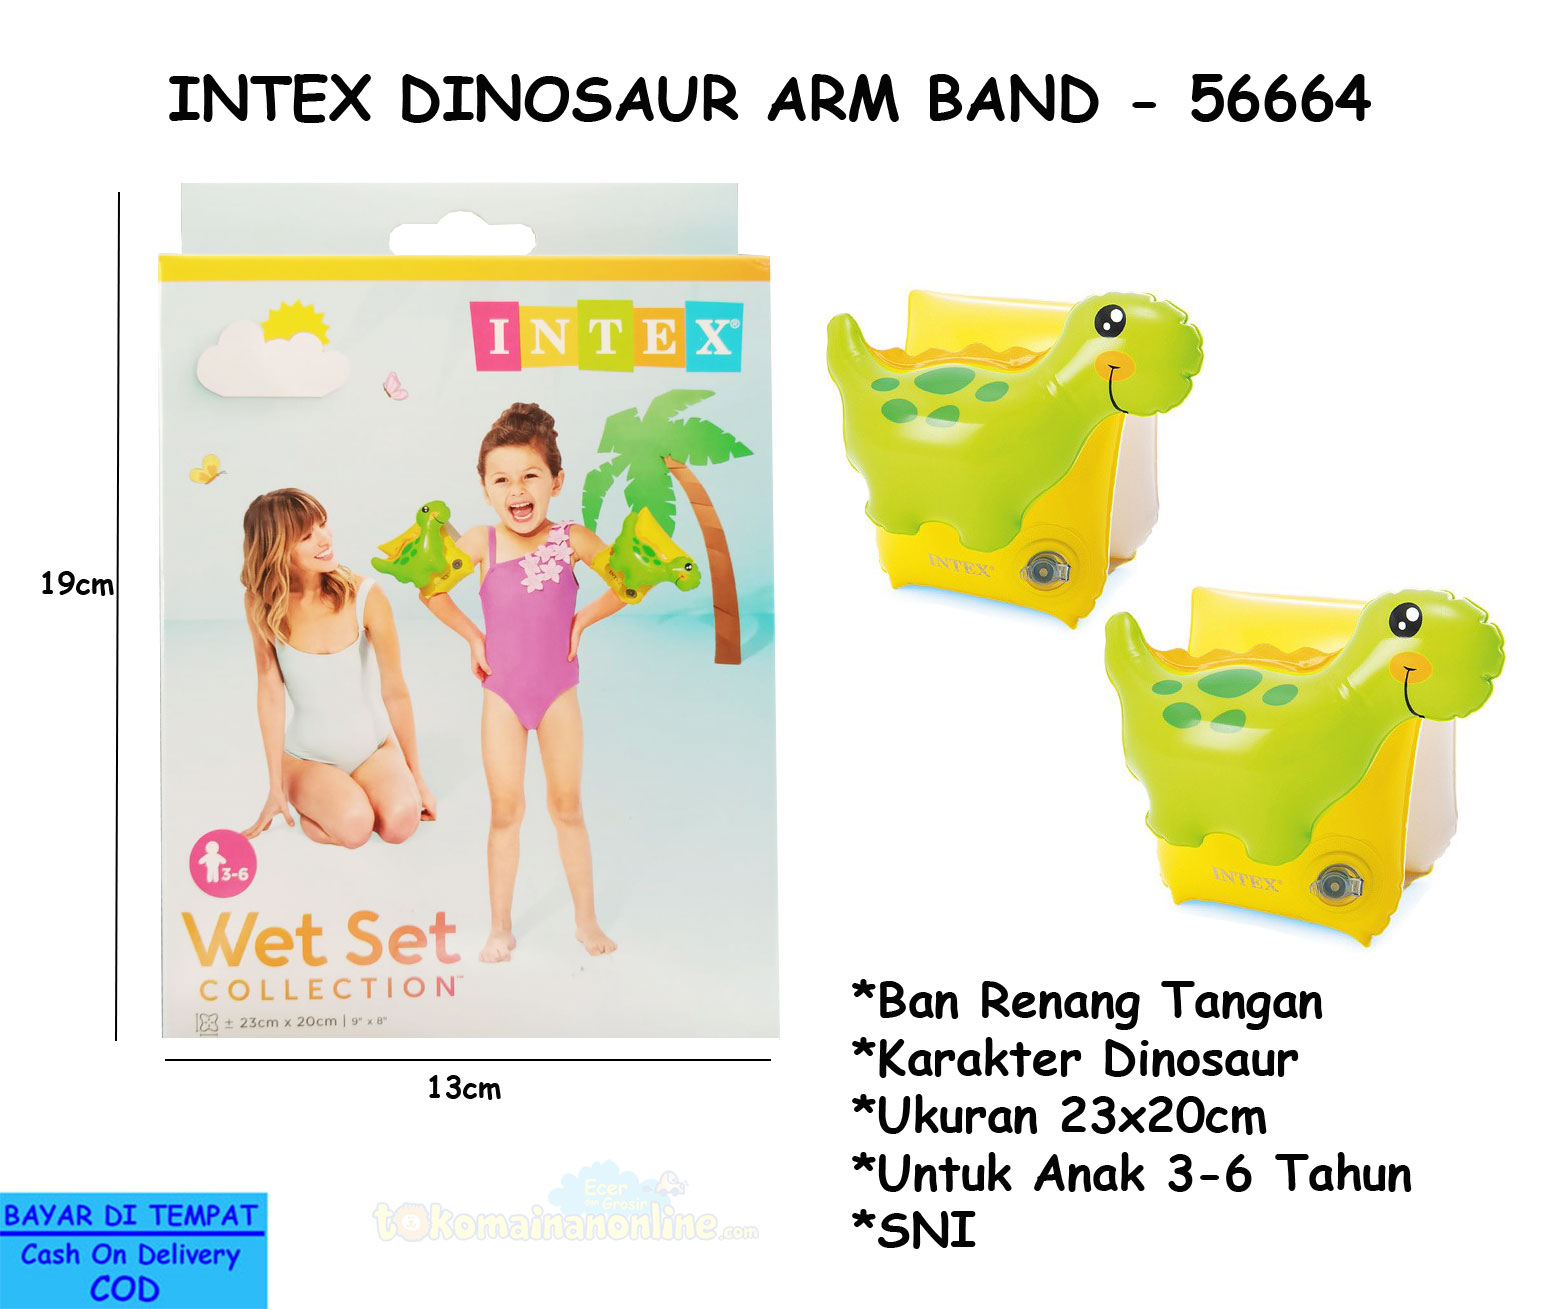 toko mainan online INTEX DINOSAUR ARM BAND - 56664